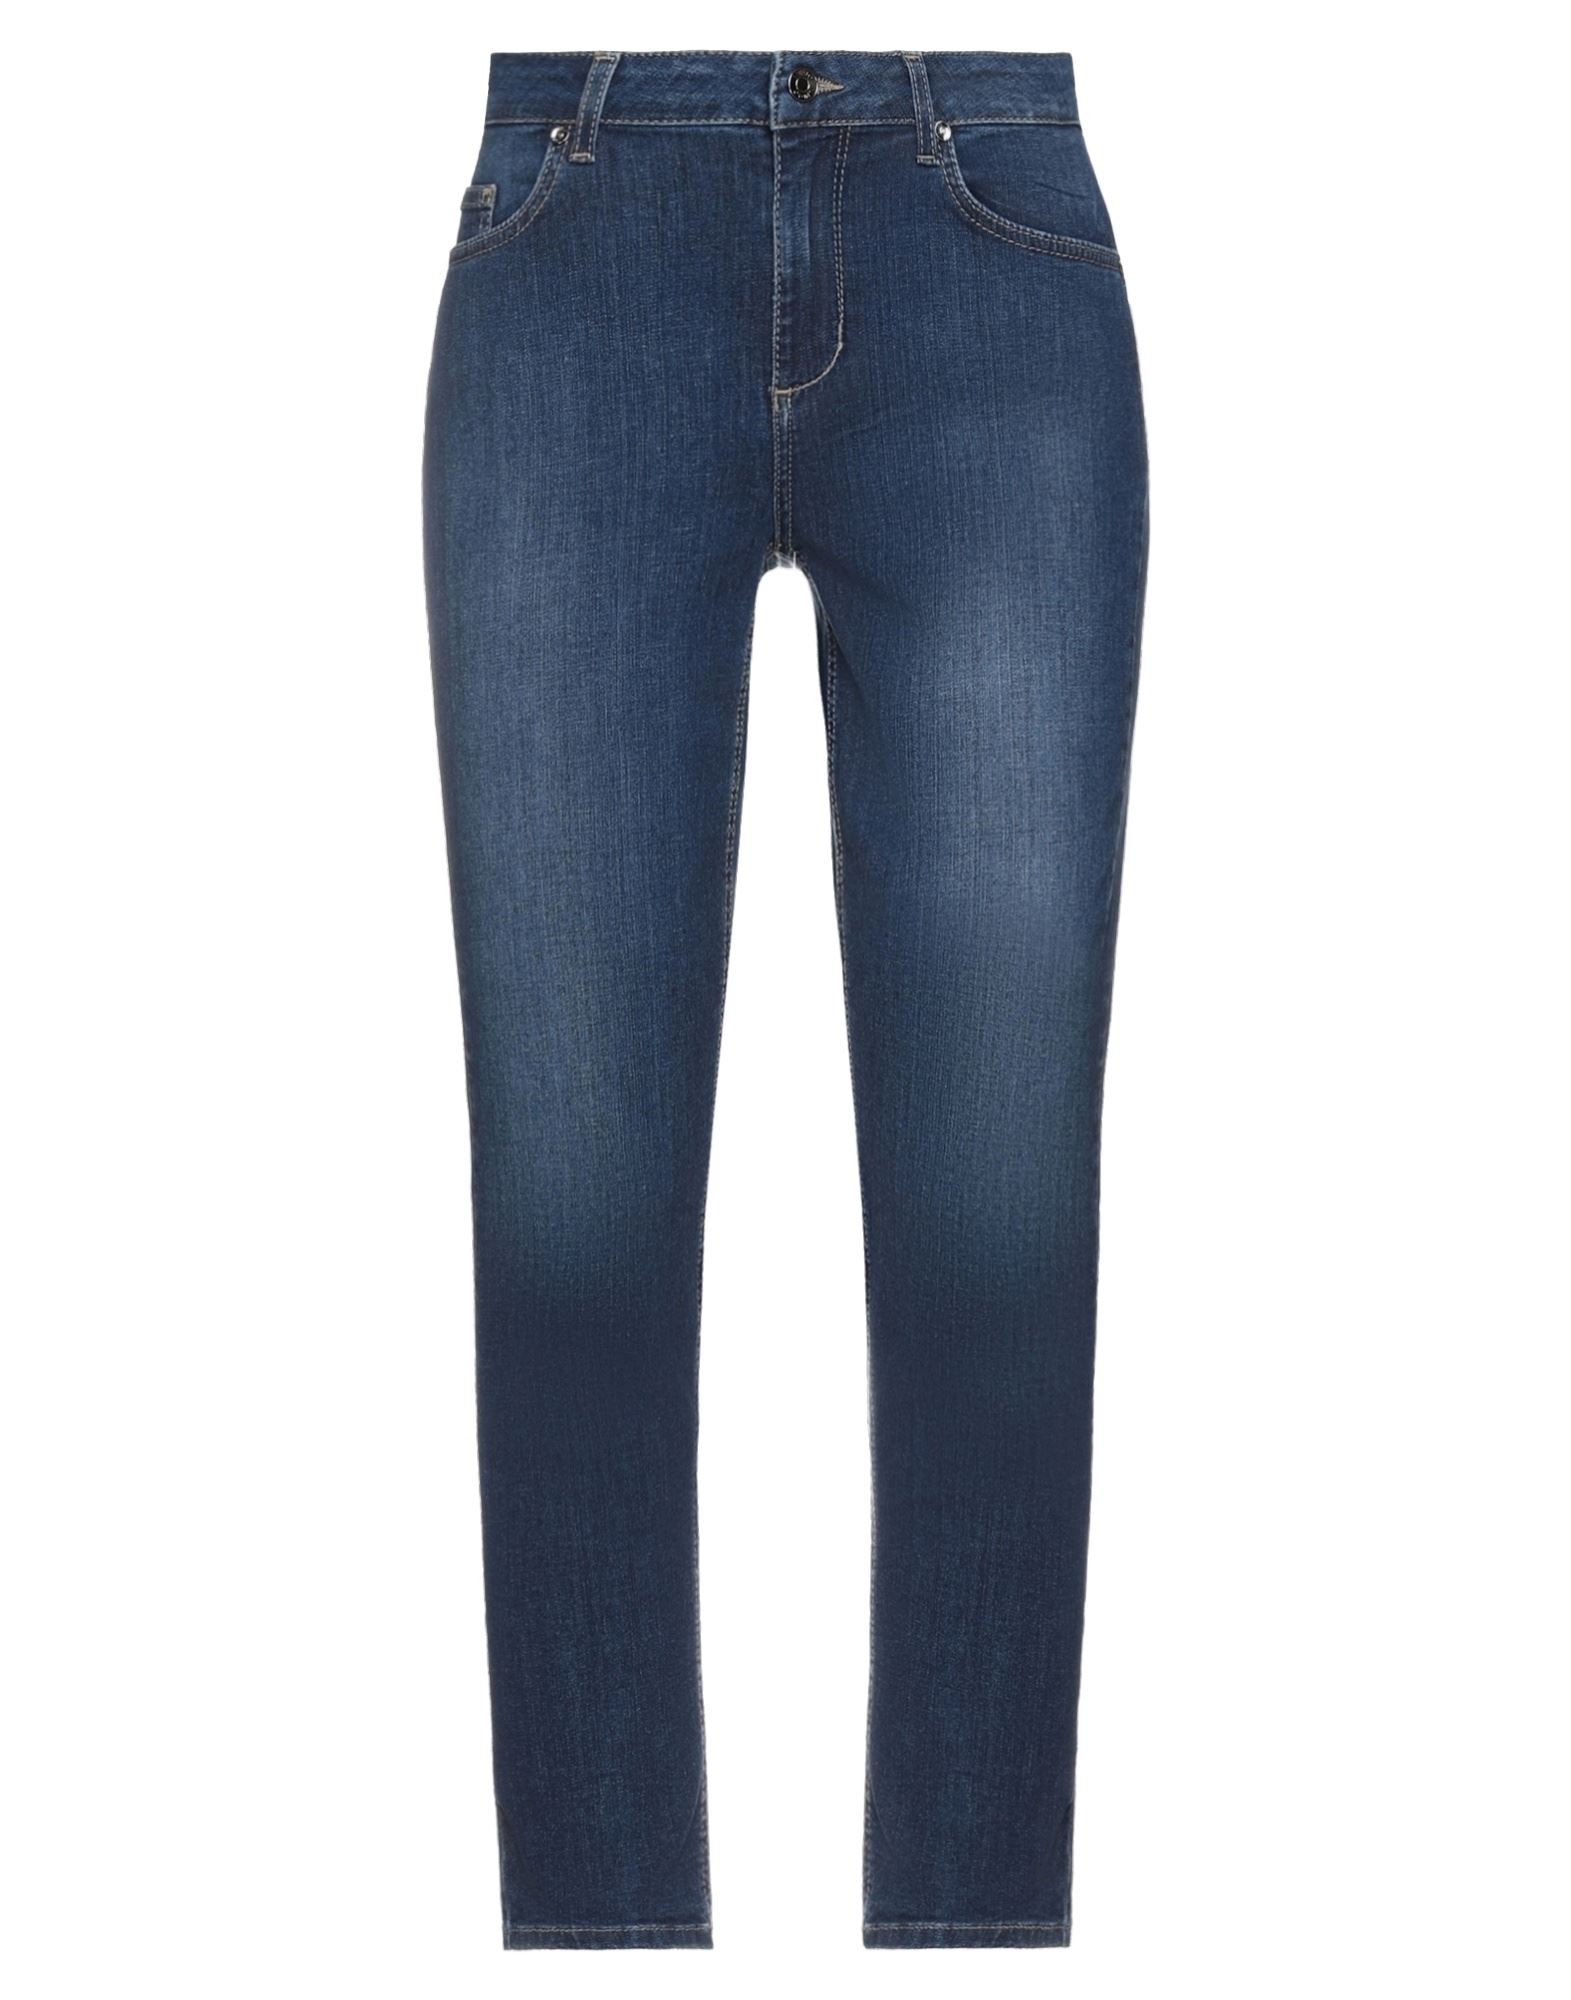 Shop Liu •jo Woman Jeans Blue Size 25w-28l Cotton, Elastane